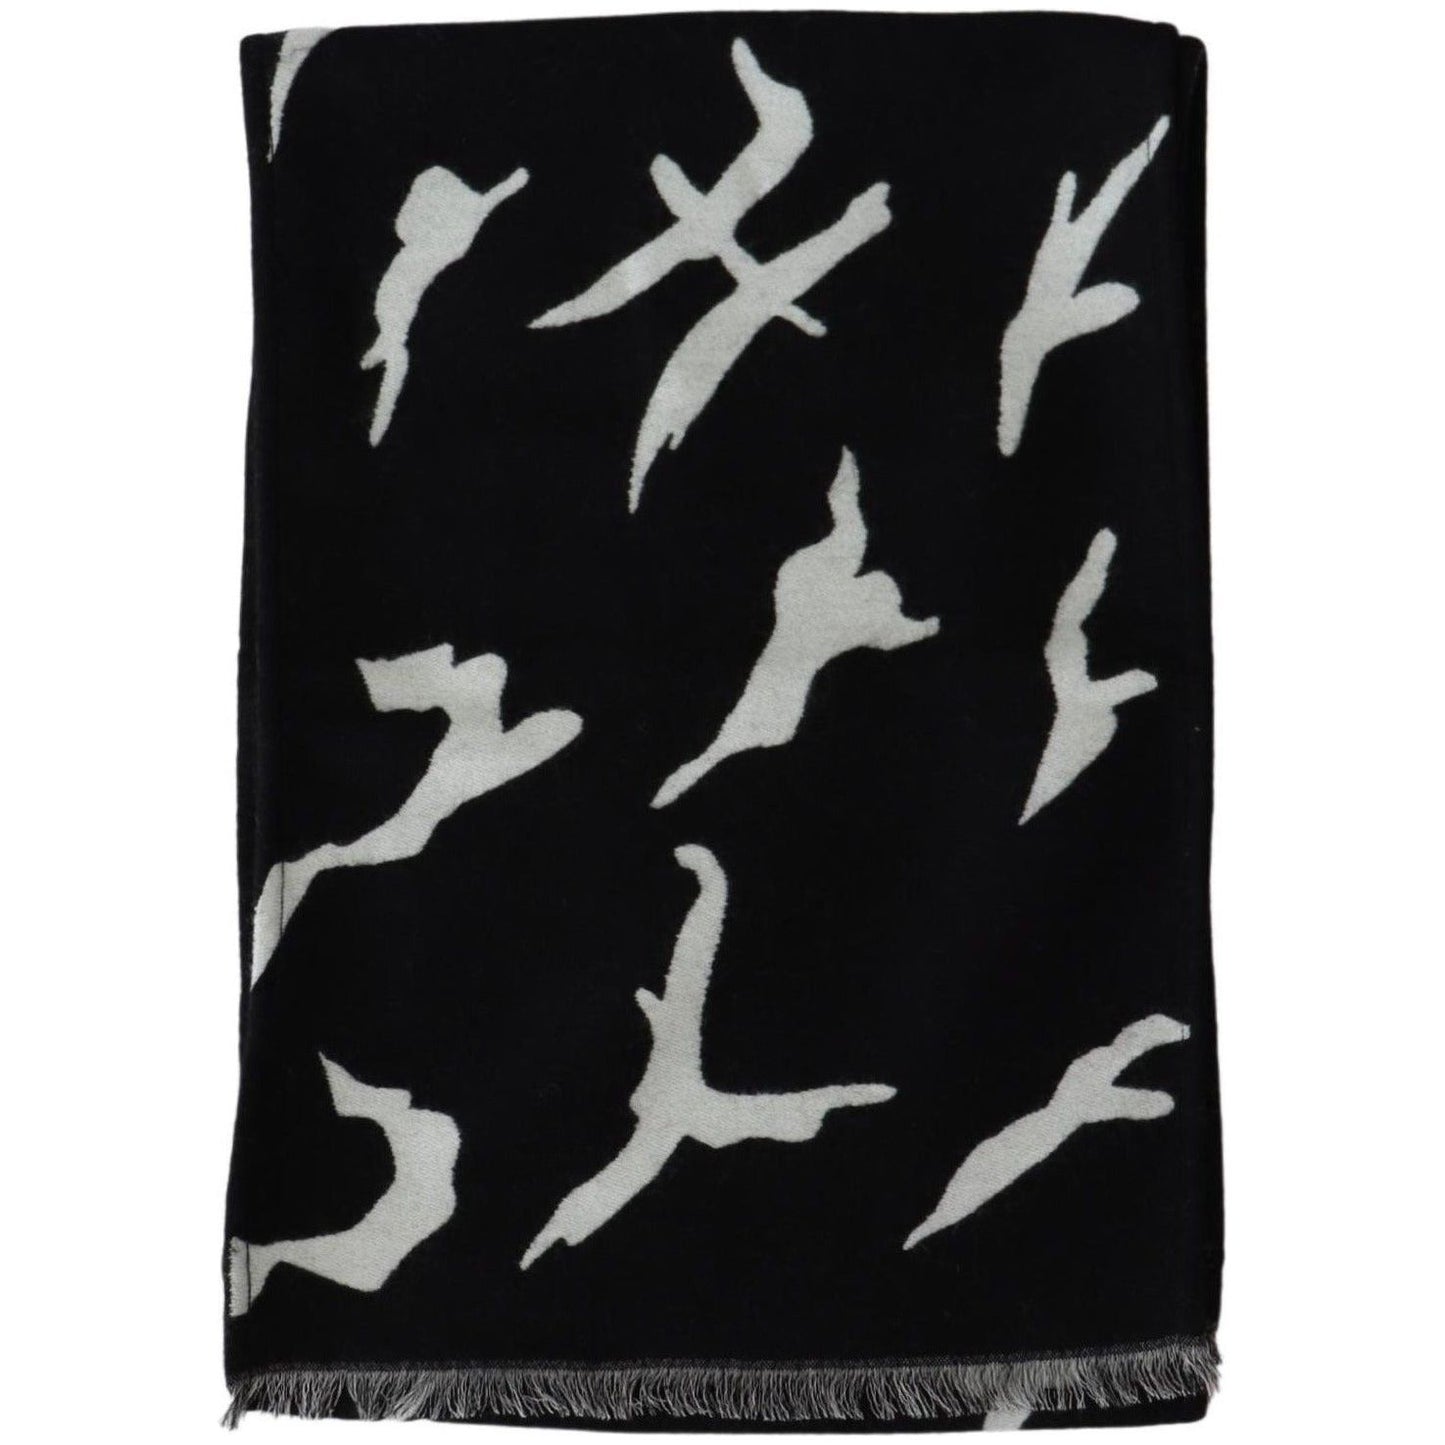 Givenchy Elegant Unisex Wool-Silk Scarf in Black & White Wool Wrap Shawls black-white-wool-unisex-winter-warm-scarf-wrap-shawl-1